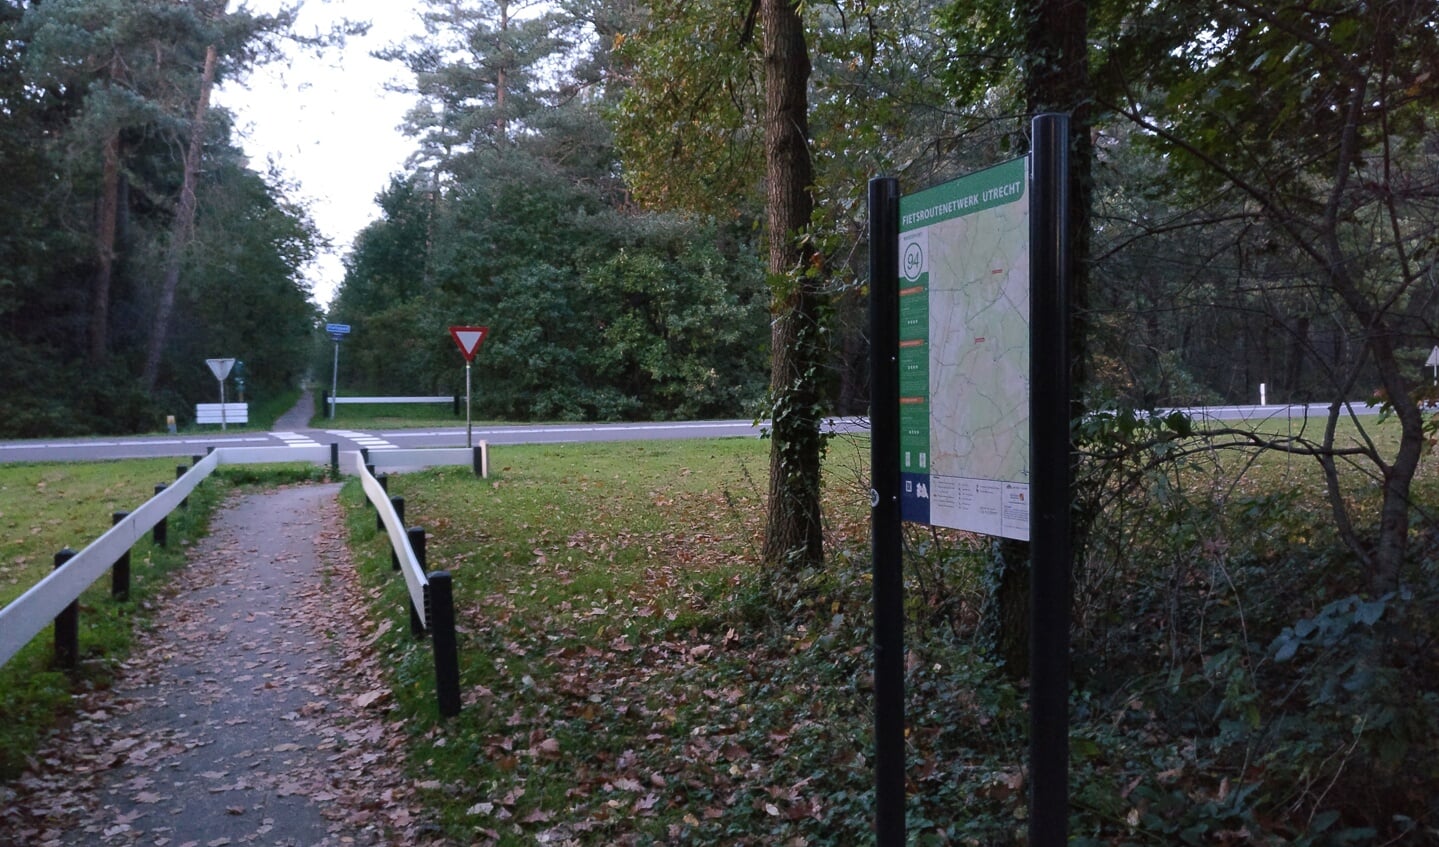 Het verzamelpunt is bij het bord Fietsrondennetwerk 94 t.o. de hoek van de Hercules Segherslaan en Gerard Doulaan.